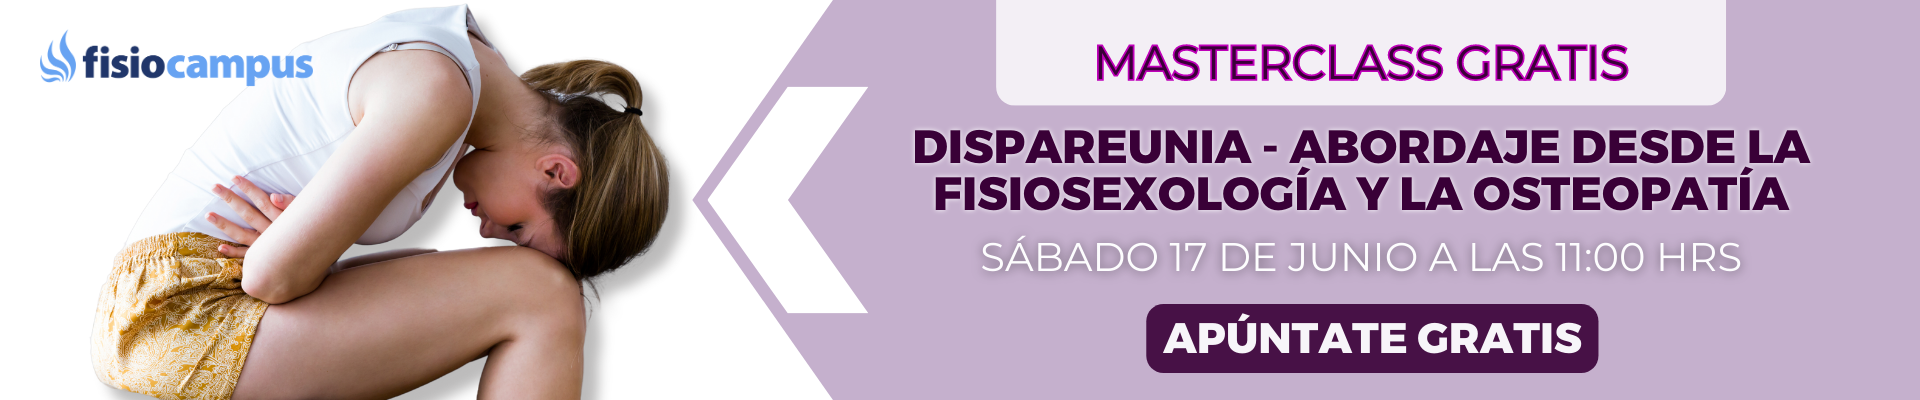 Cabecera Desktop Dispareunia - Abordaje desde la Fisiosexología y la osteopatía